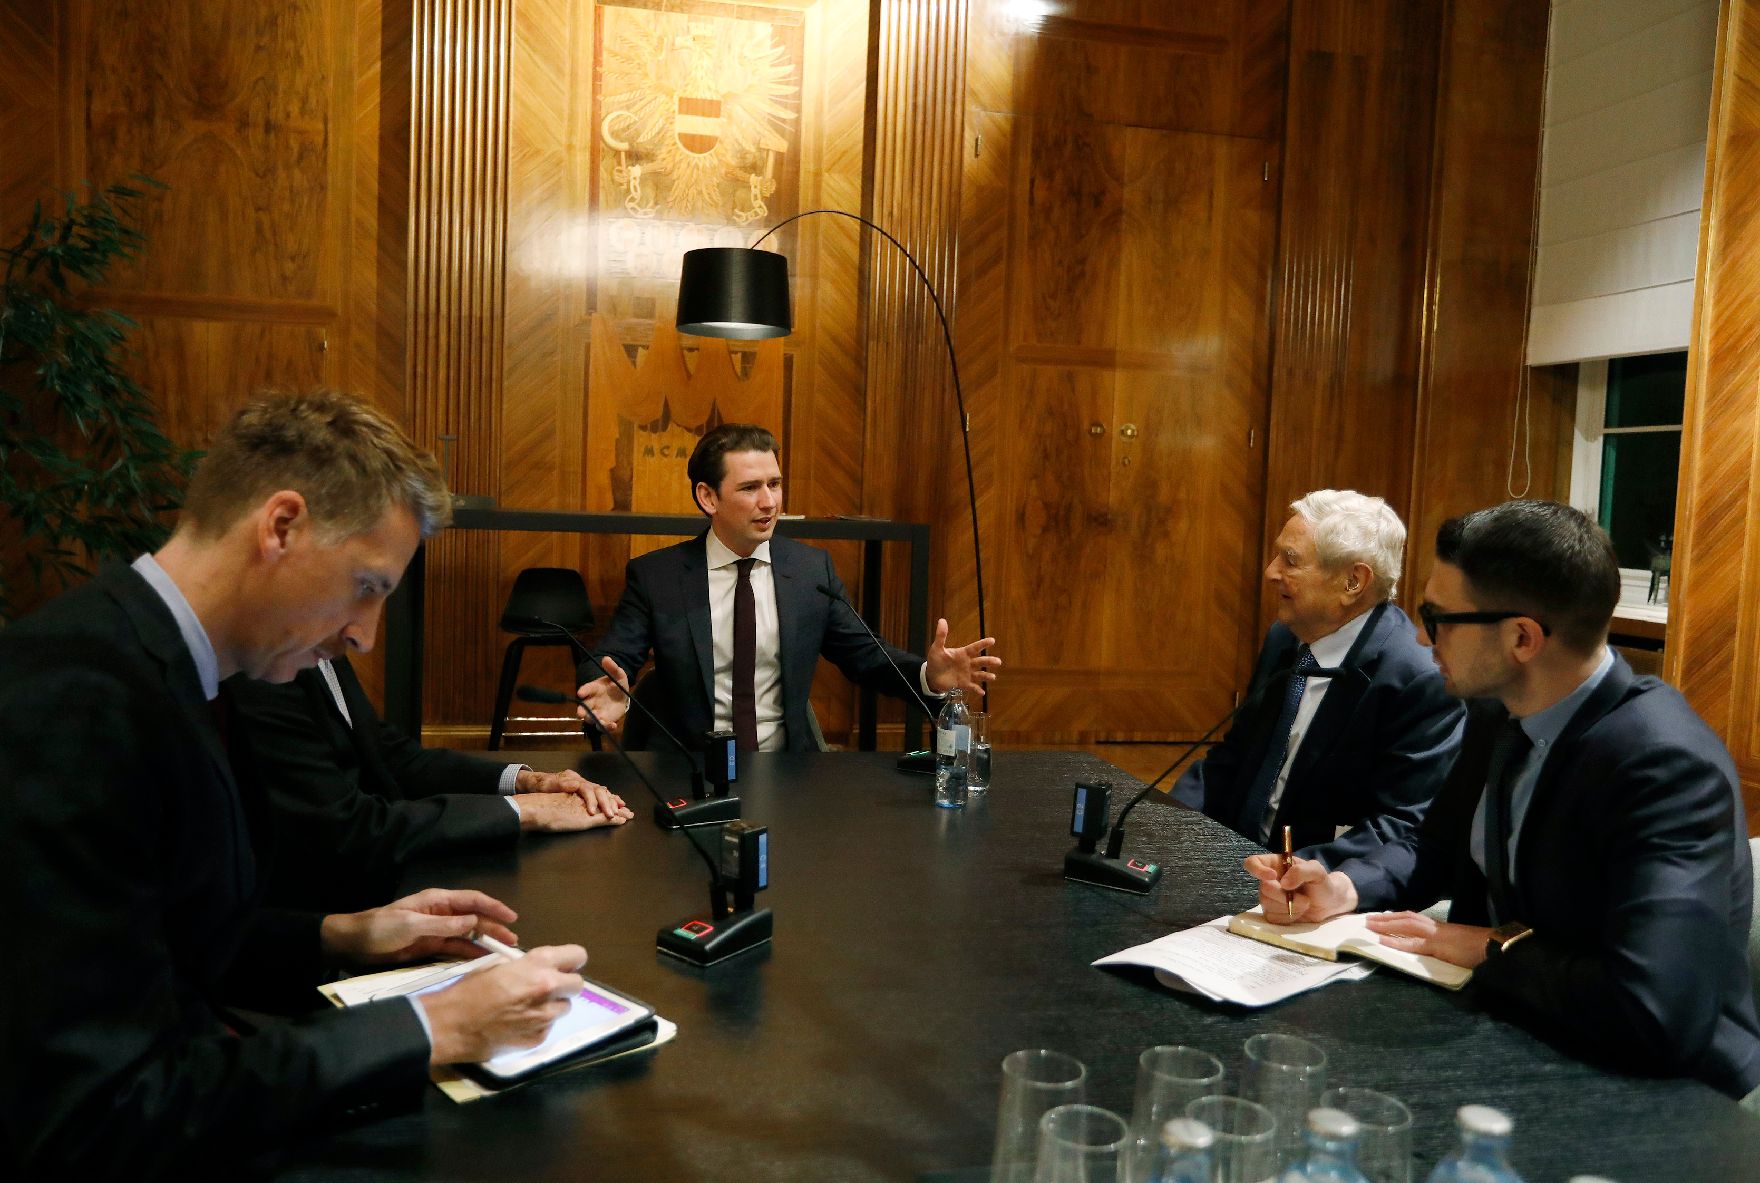 Am 18. November 2018 empfing Bundeskanzler Sebastian Kurz (m.) den Philanthropen George Soros (m.r.) zu einem Gespräch.